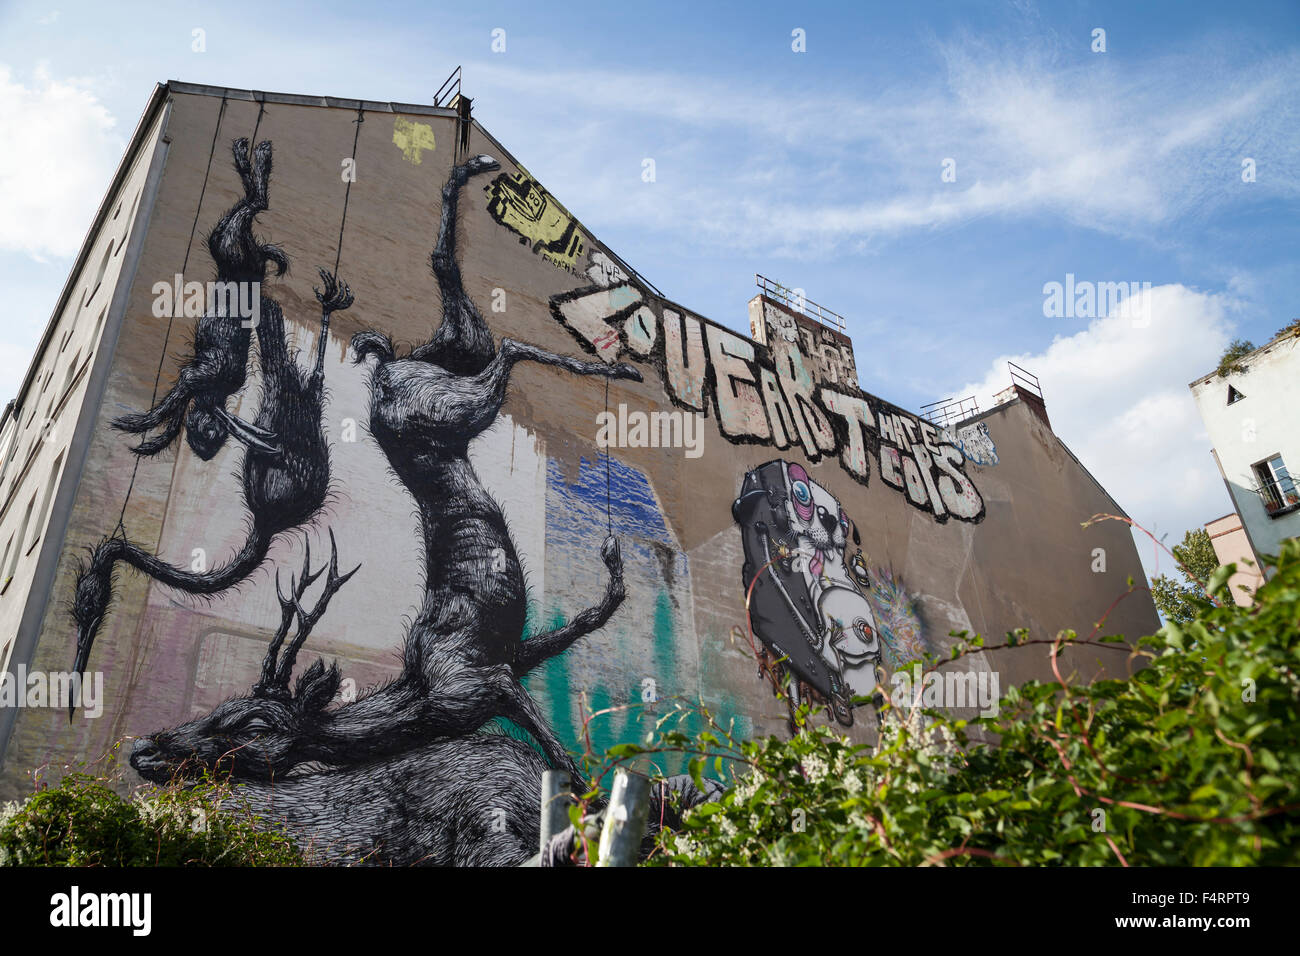 graffiti on house in kreuzberg berlin Stock Photo